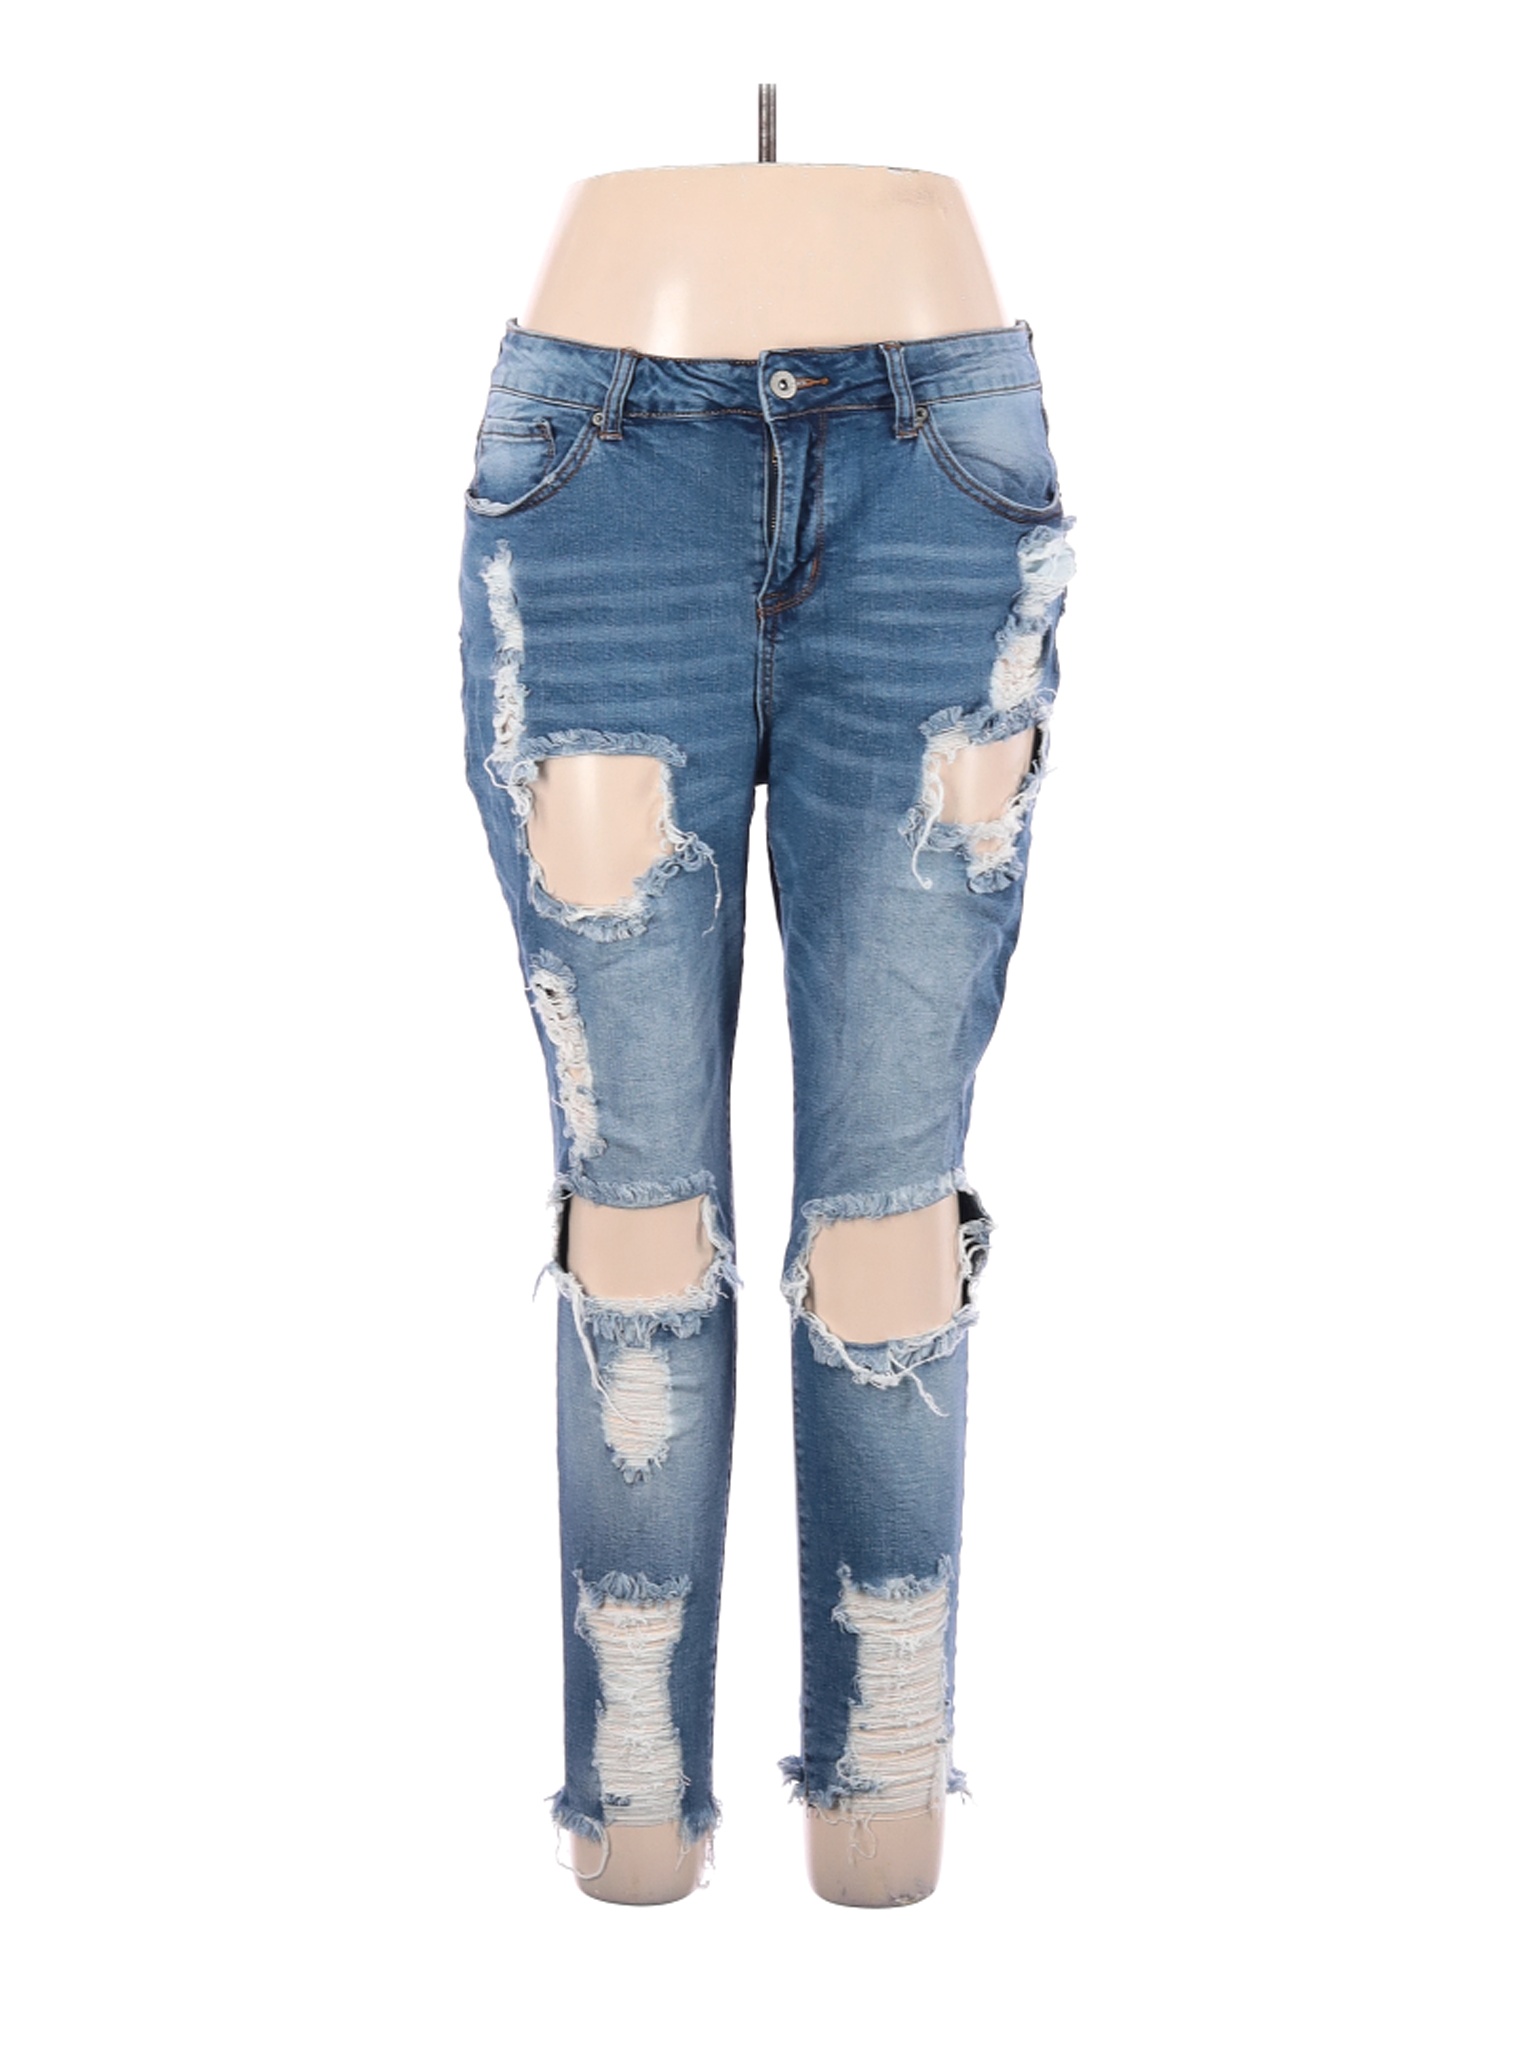 S.O.N.G. Women Blue Jeans 33W | eBay